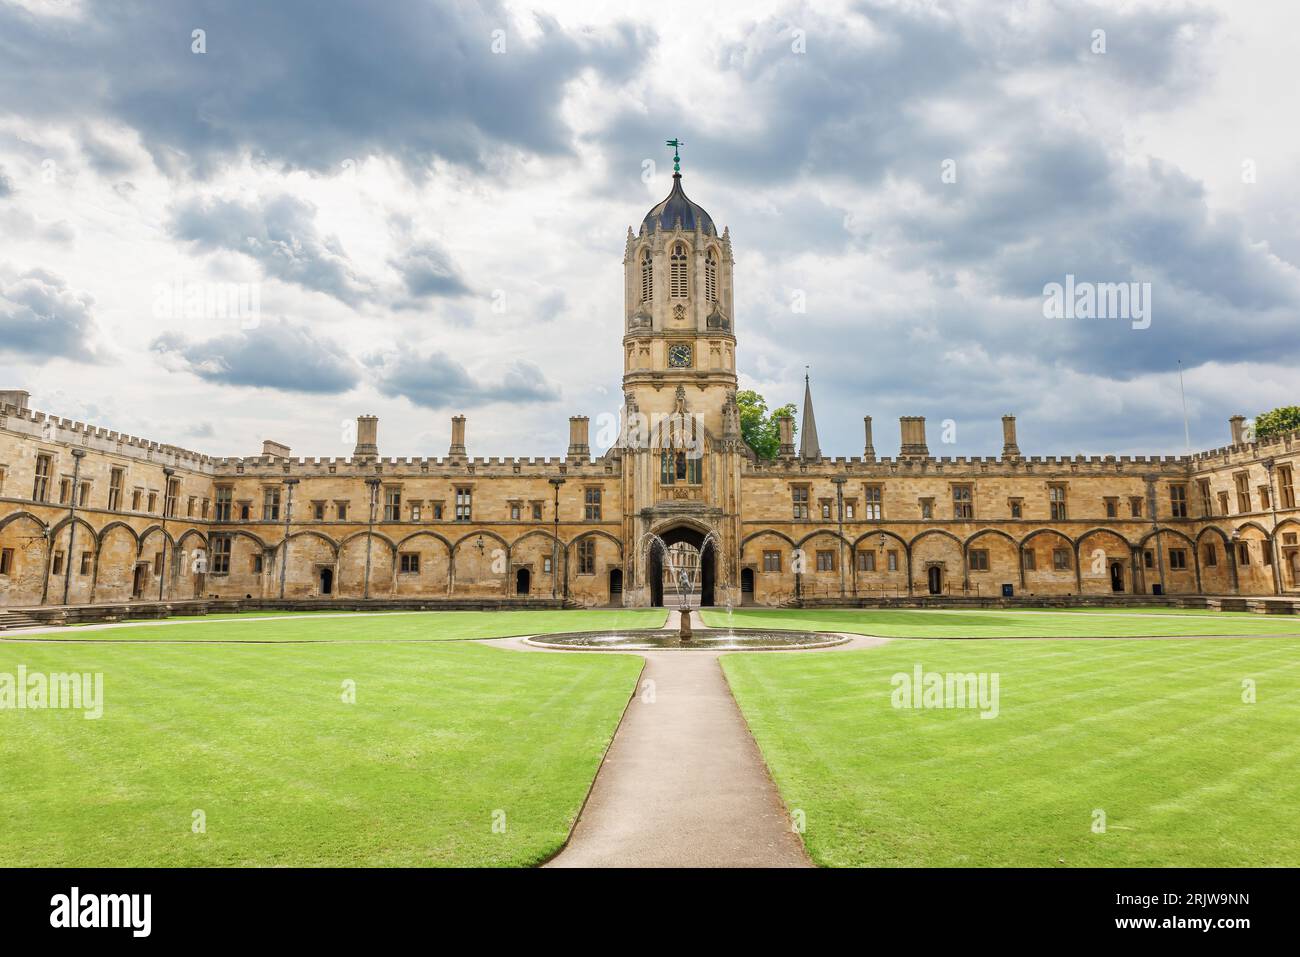 Das Christ Church College, manchmal auch bekannt als „The House“, ist ein konstituierendes College der University of Oxford in England Stockfoto